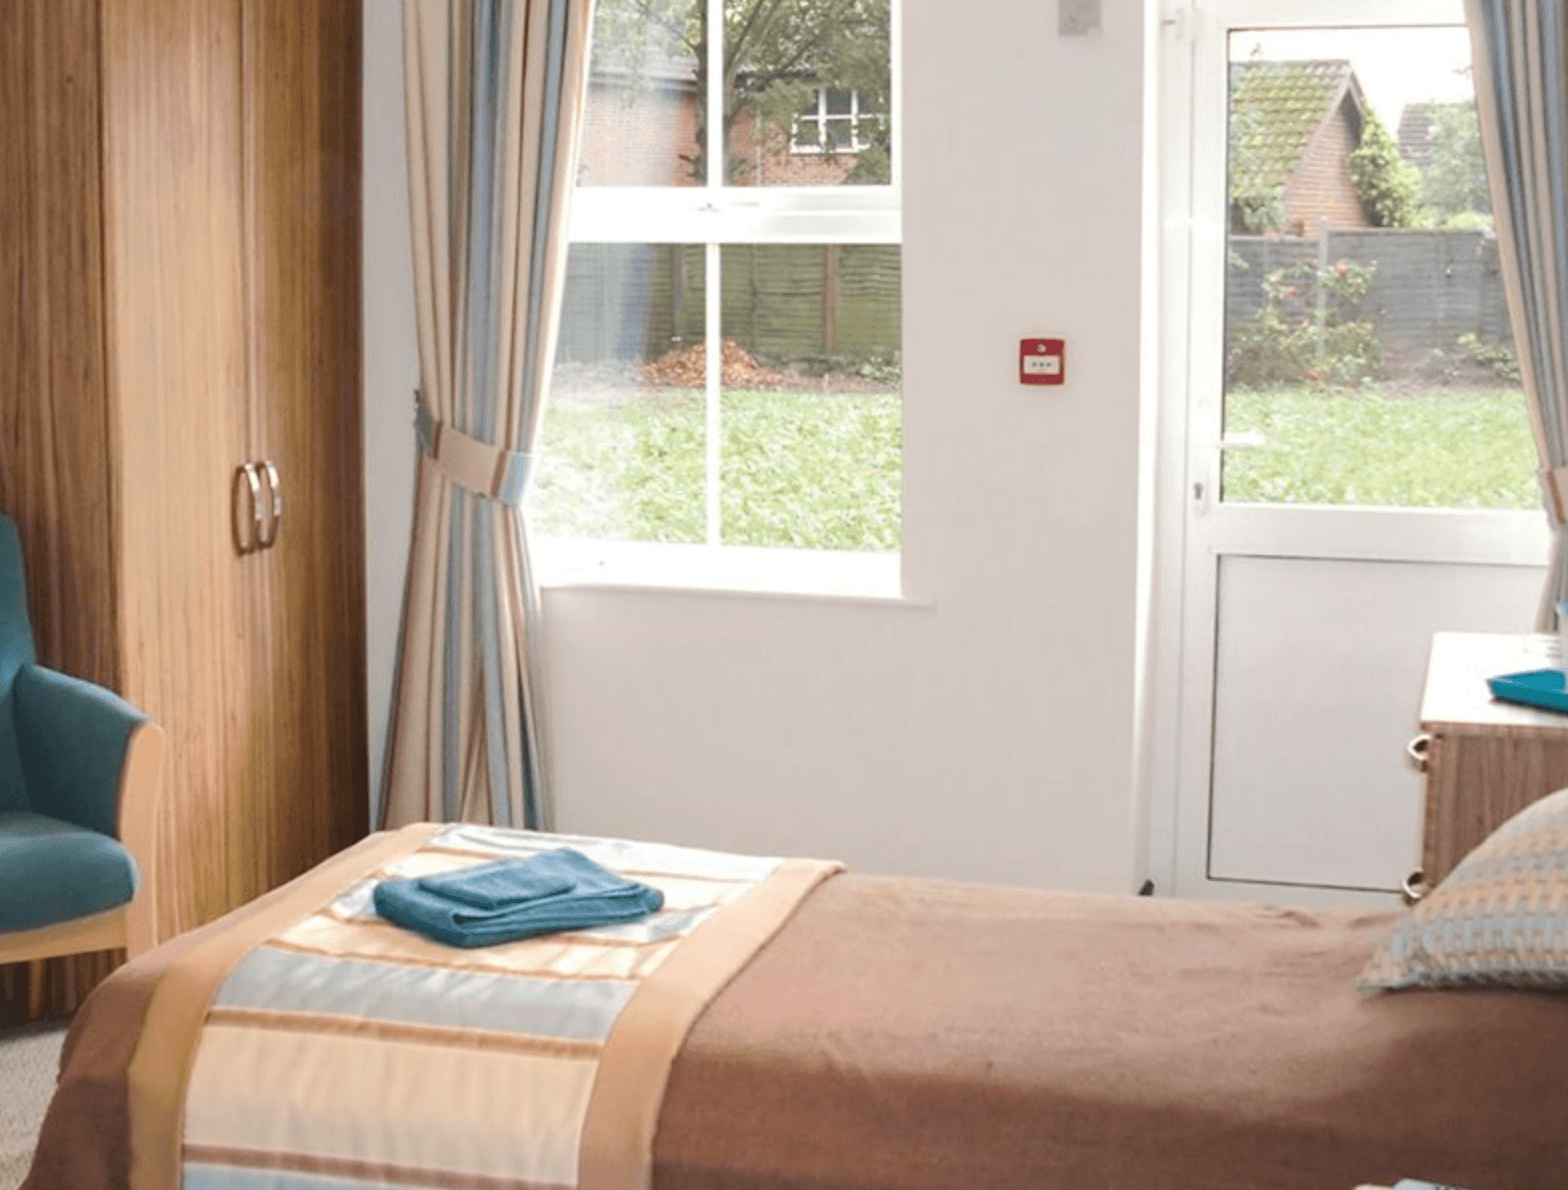 Bedroom of Bagshot Park Rehabilitation in Bagshot, Surrey